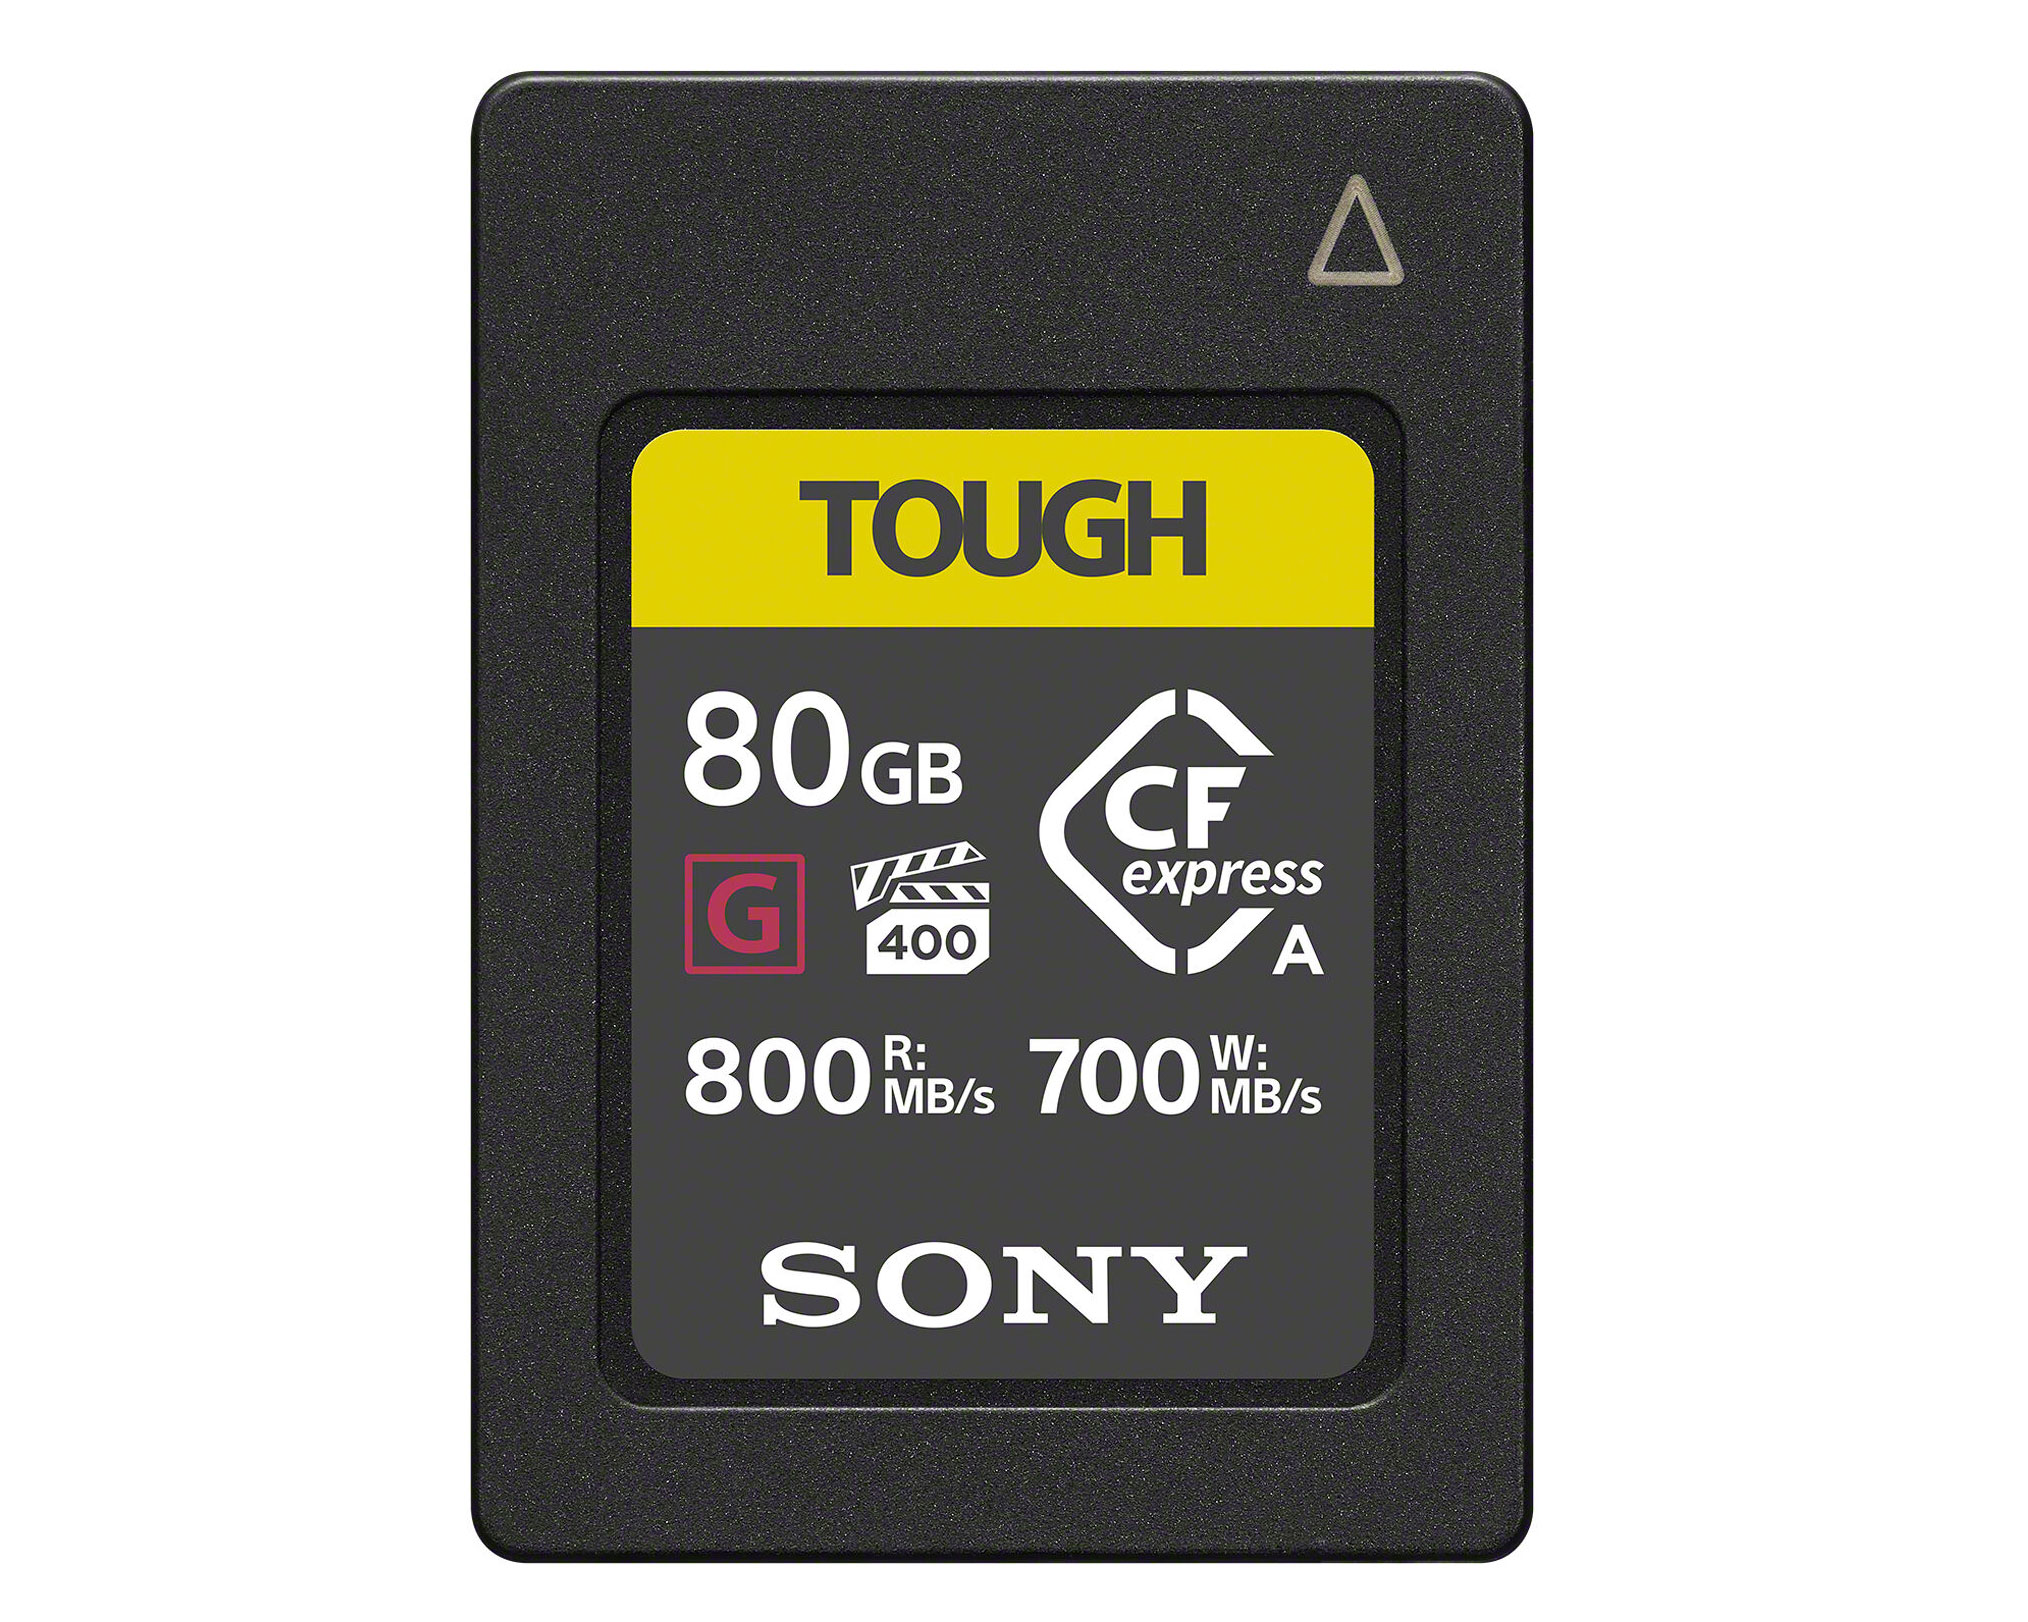 Sony CFexpress Type A Tough G 80GB